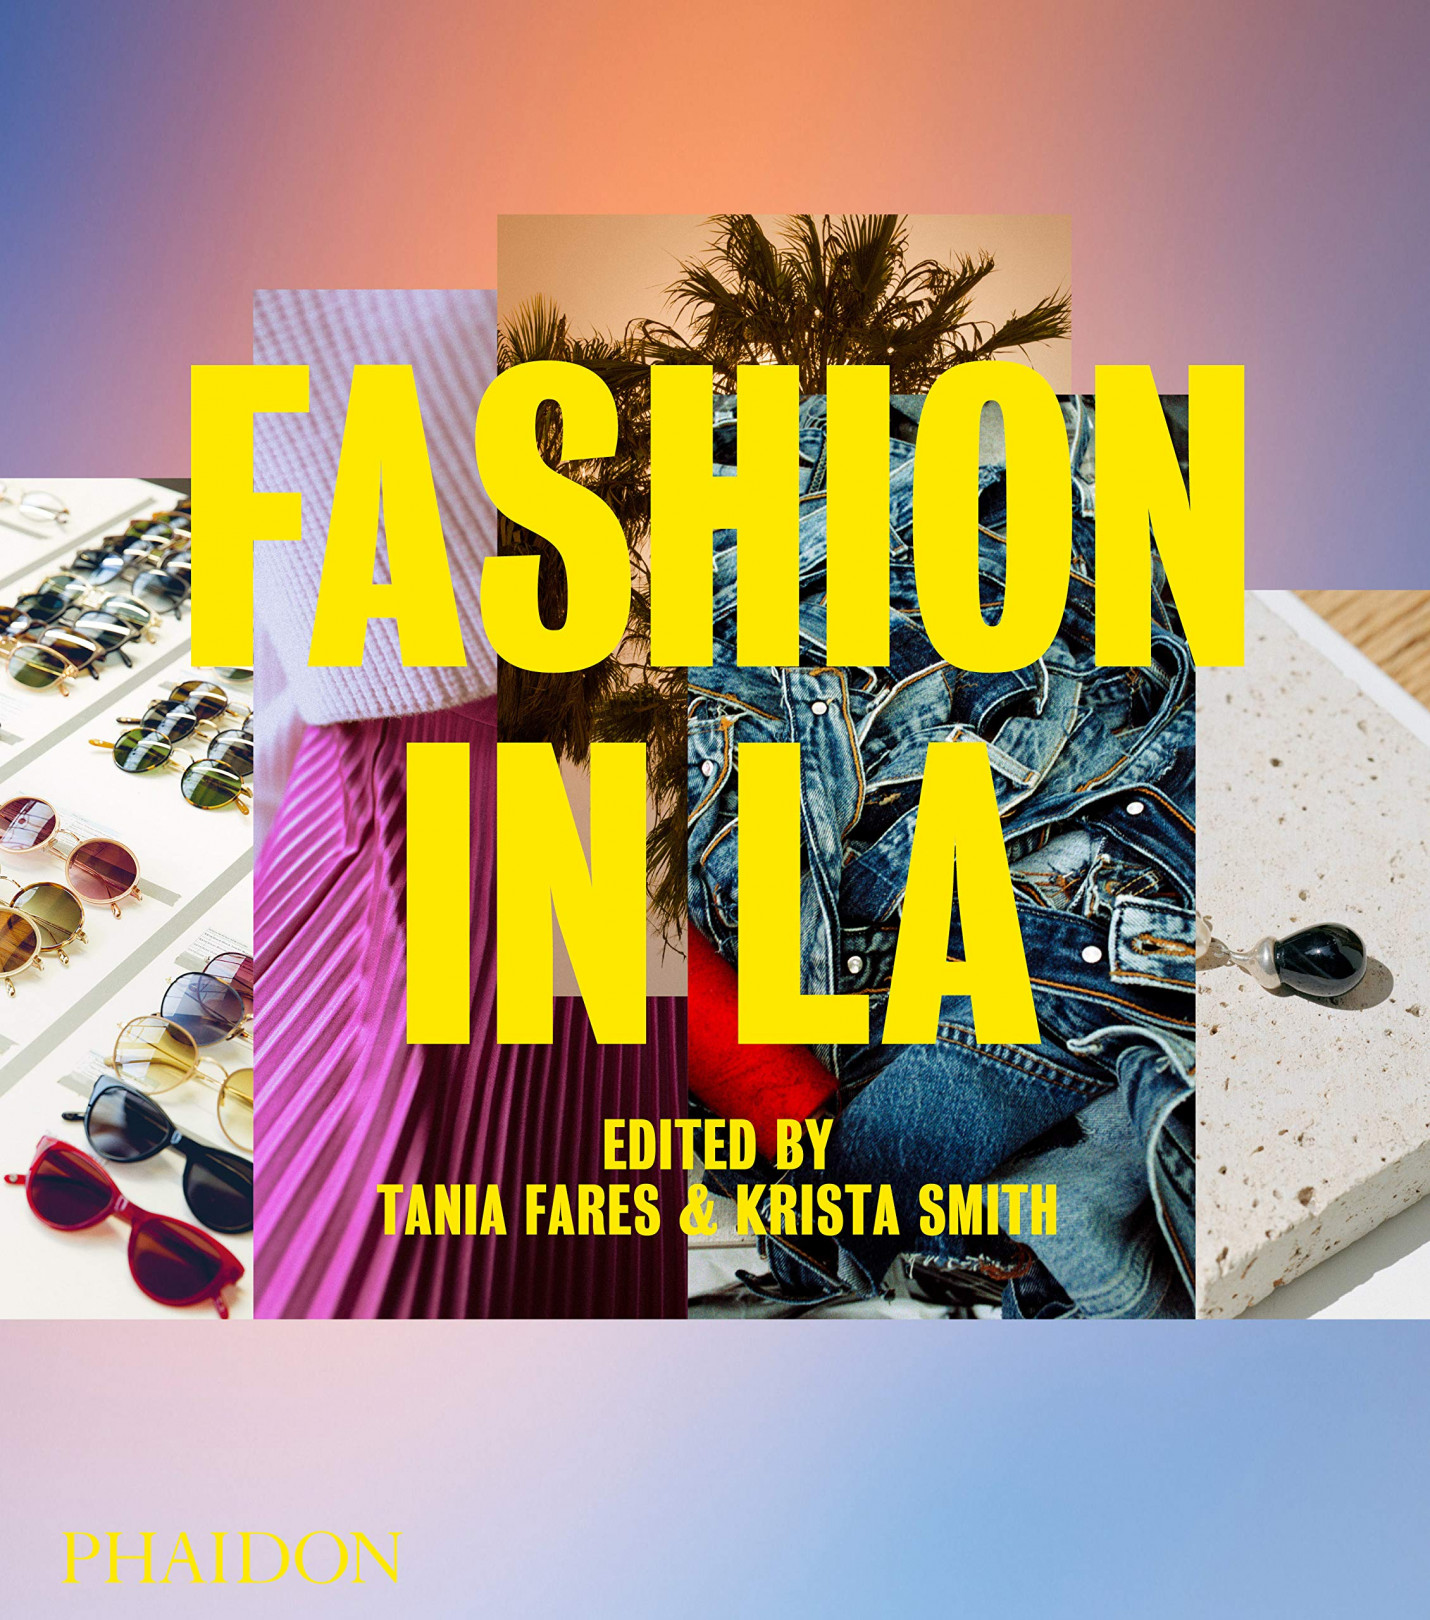 『Fashion in LA』